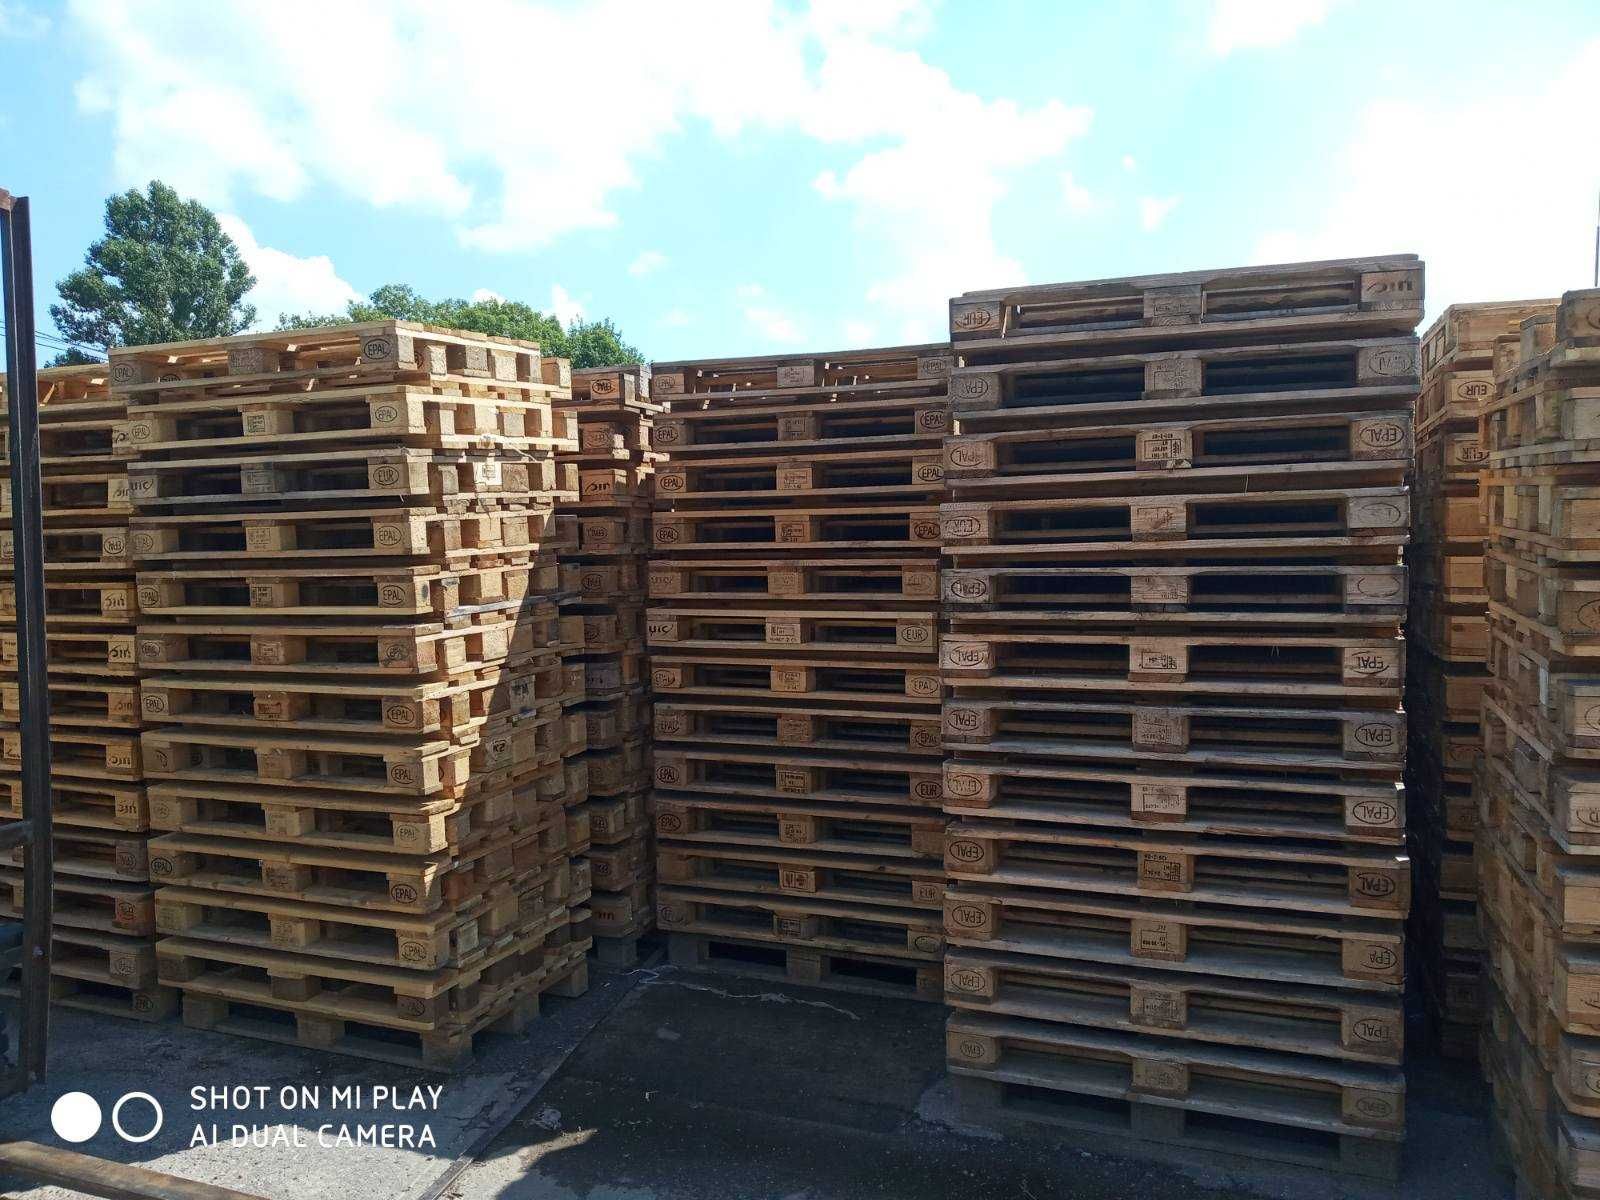 Продаж дерев’яних б/в піддонів (палет) Євростандарту 1200*800 мм.